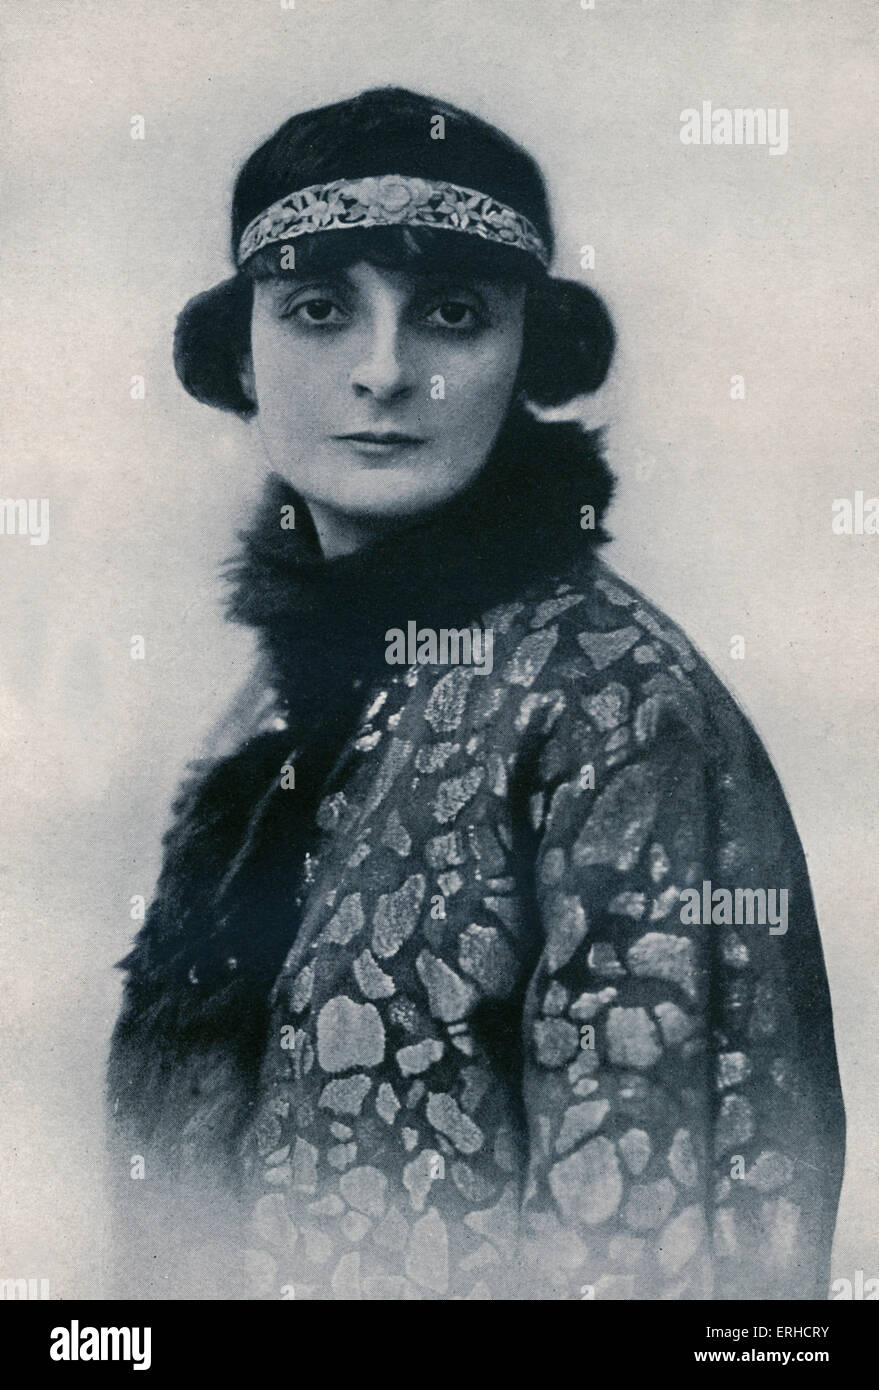 Anna Comtesse Mathieu de Noailles, portrait. Romanian-French novelist and poet, 15 November 1876 – 30 April 1933. After the Stock Photo